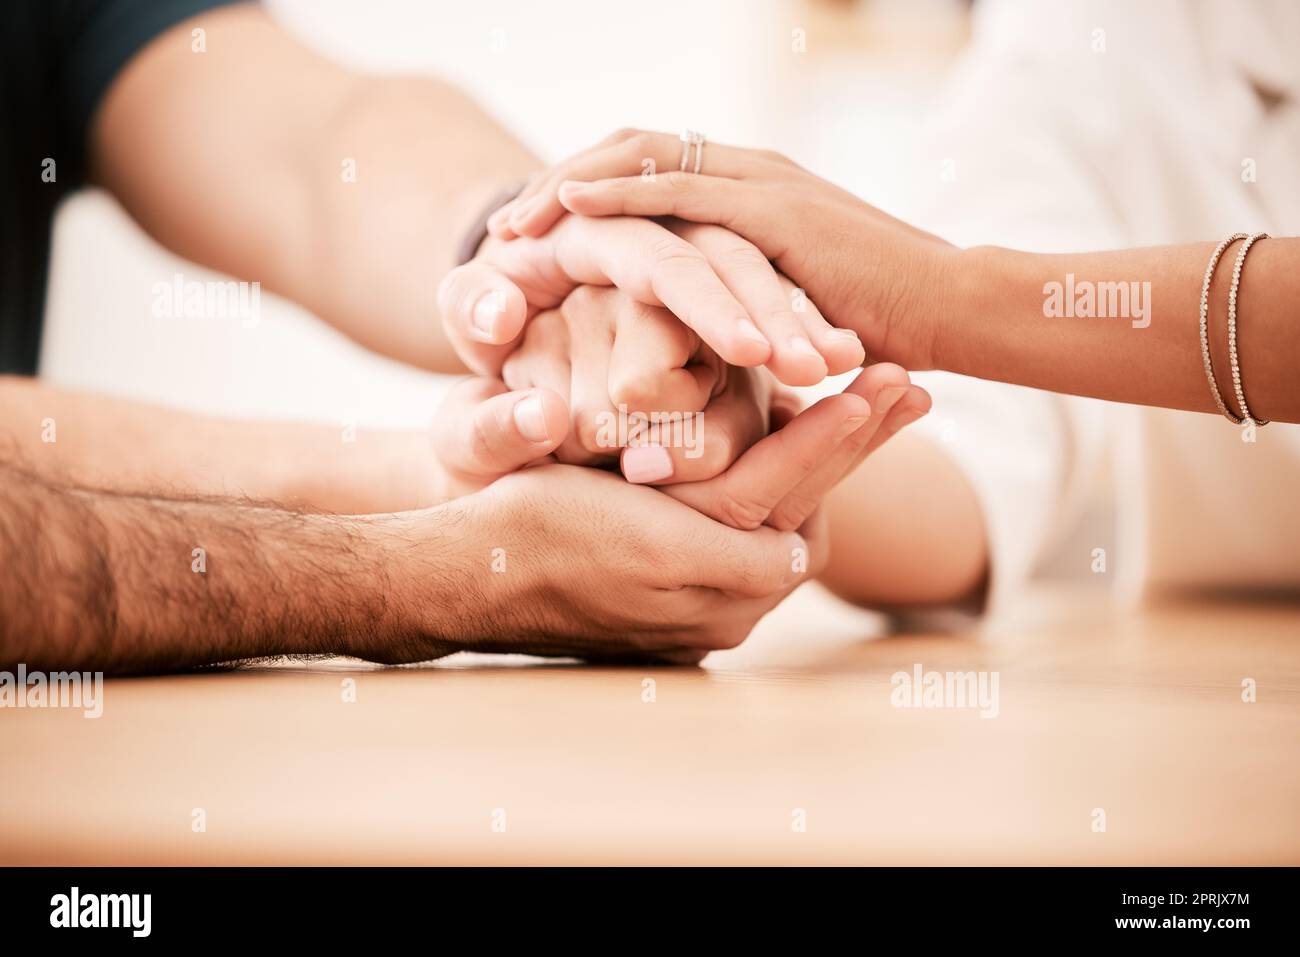 Unterstützung, Fürsorge und Familie halten sich am Tisch die Hände zusammen, um Einfühlungsvermögen, Liebe und Hoffnung zu zeigen. Nahaufnahme von Verbindung, Vertrauen und Freundschaft in der kommunalen Reha-Gruppe zeigt Mitgefühl und Dankbarkeit. Stockfoto